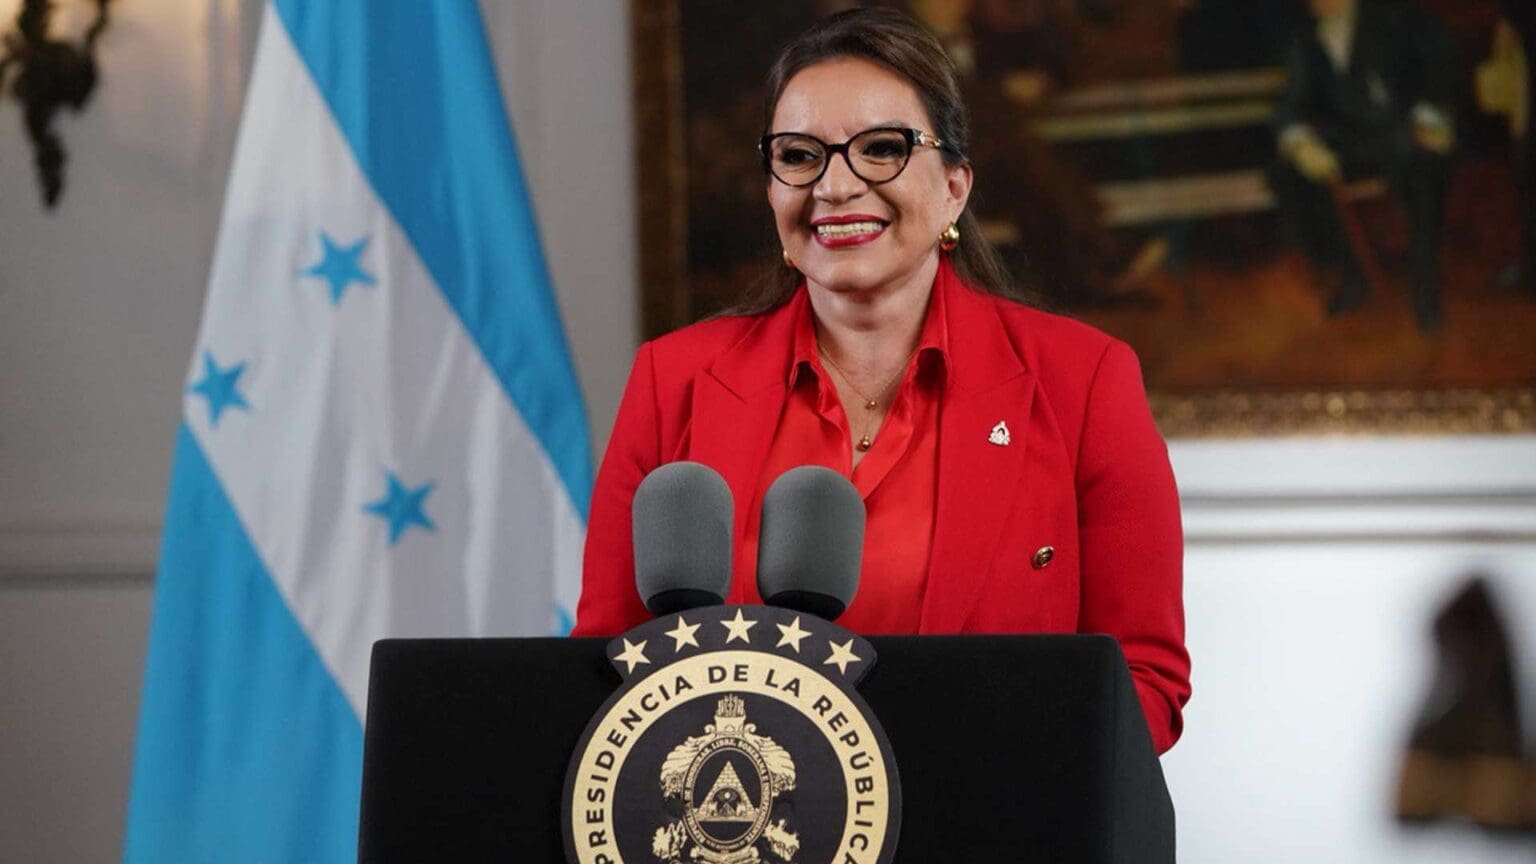 La presidenta de Honduras felicita a Nayib Bukele "por su gran triunfo electoral"